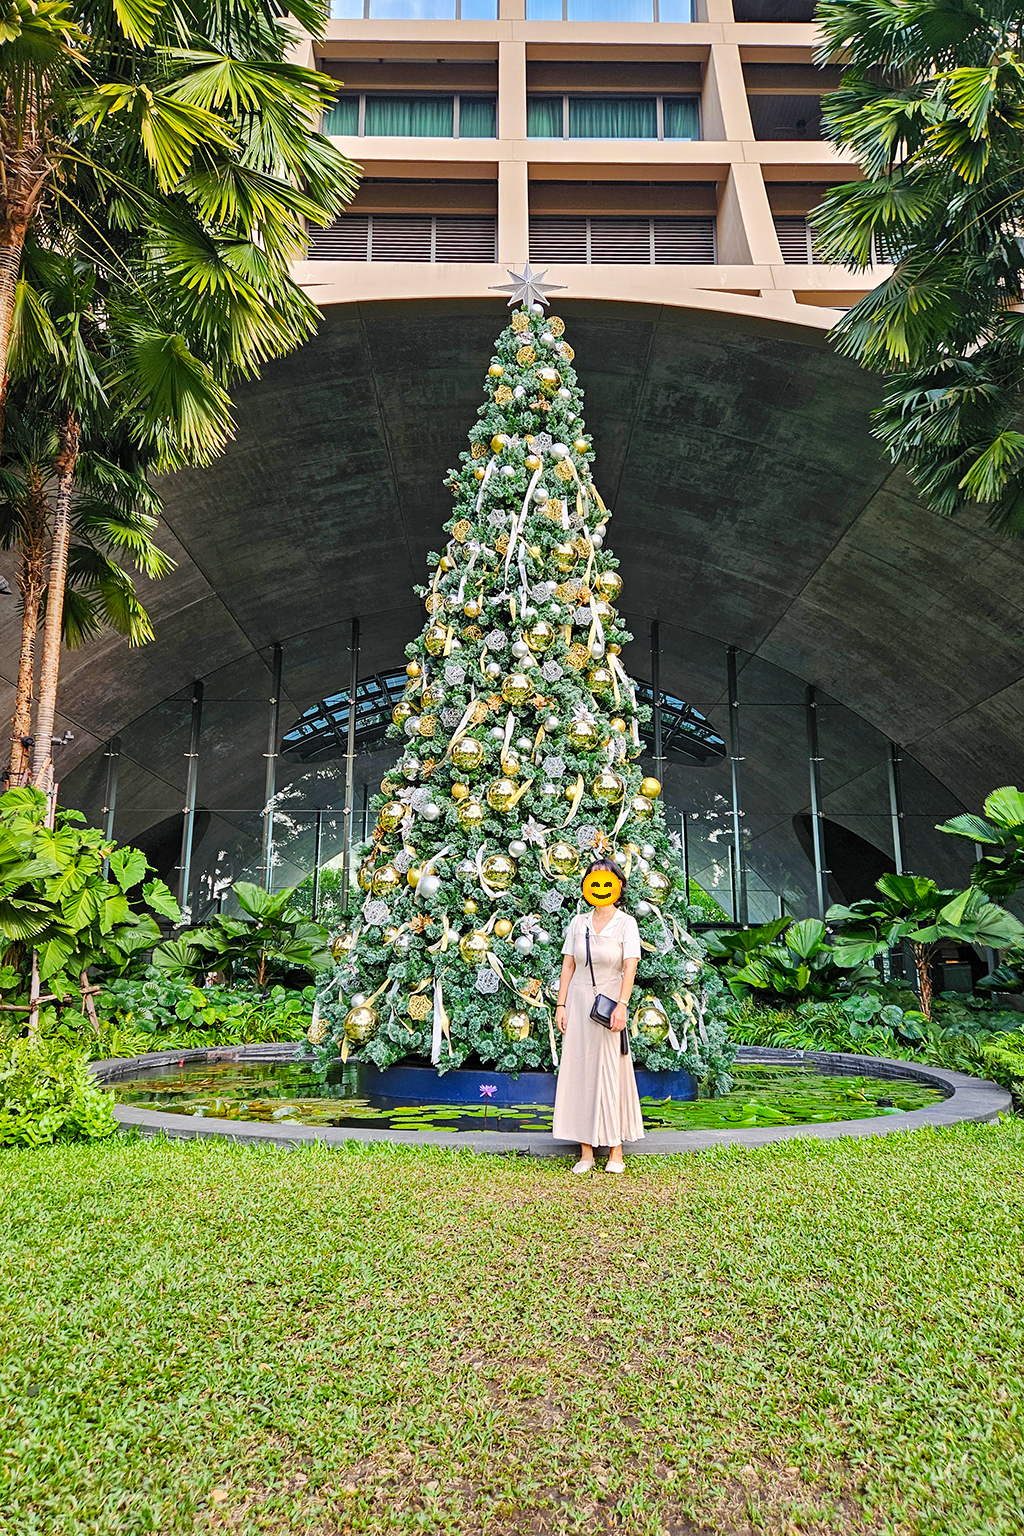 태국 방콕 씬톤 켐핀스키 호텔 Bangkok Sindhorn Kempinski Hotel 크리스마스 트리 앞에서 베이지색 원피스 입은 사람